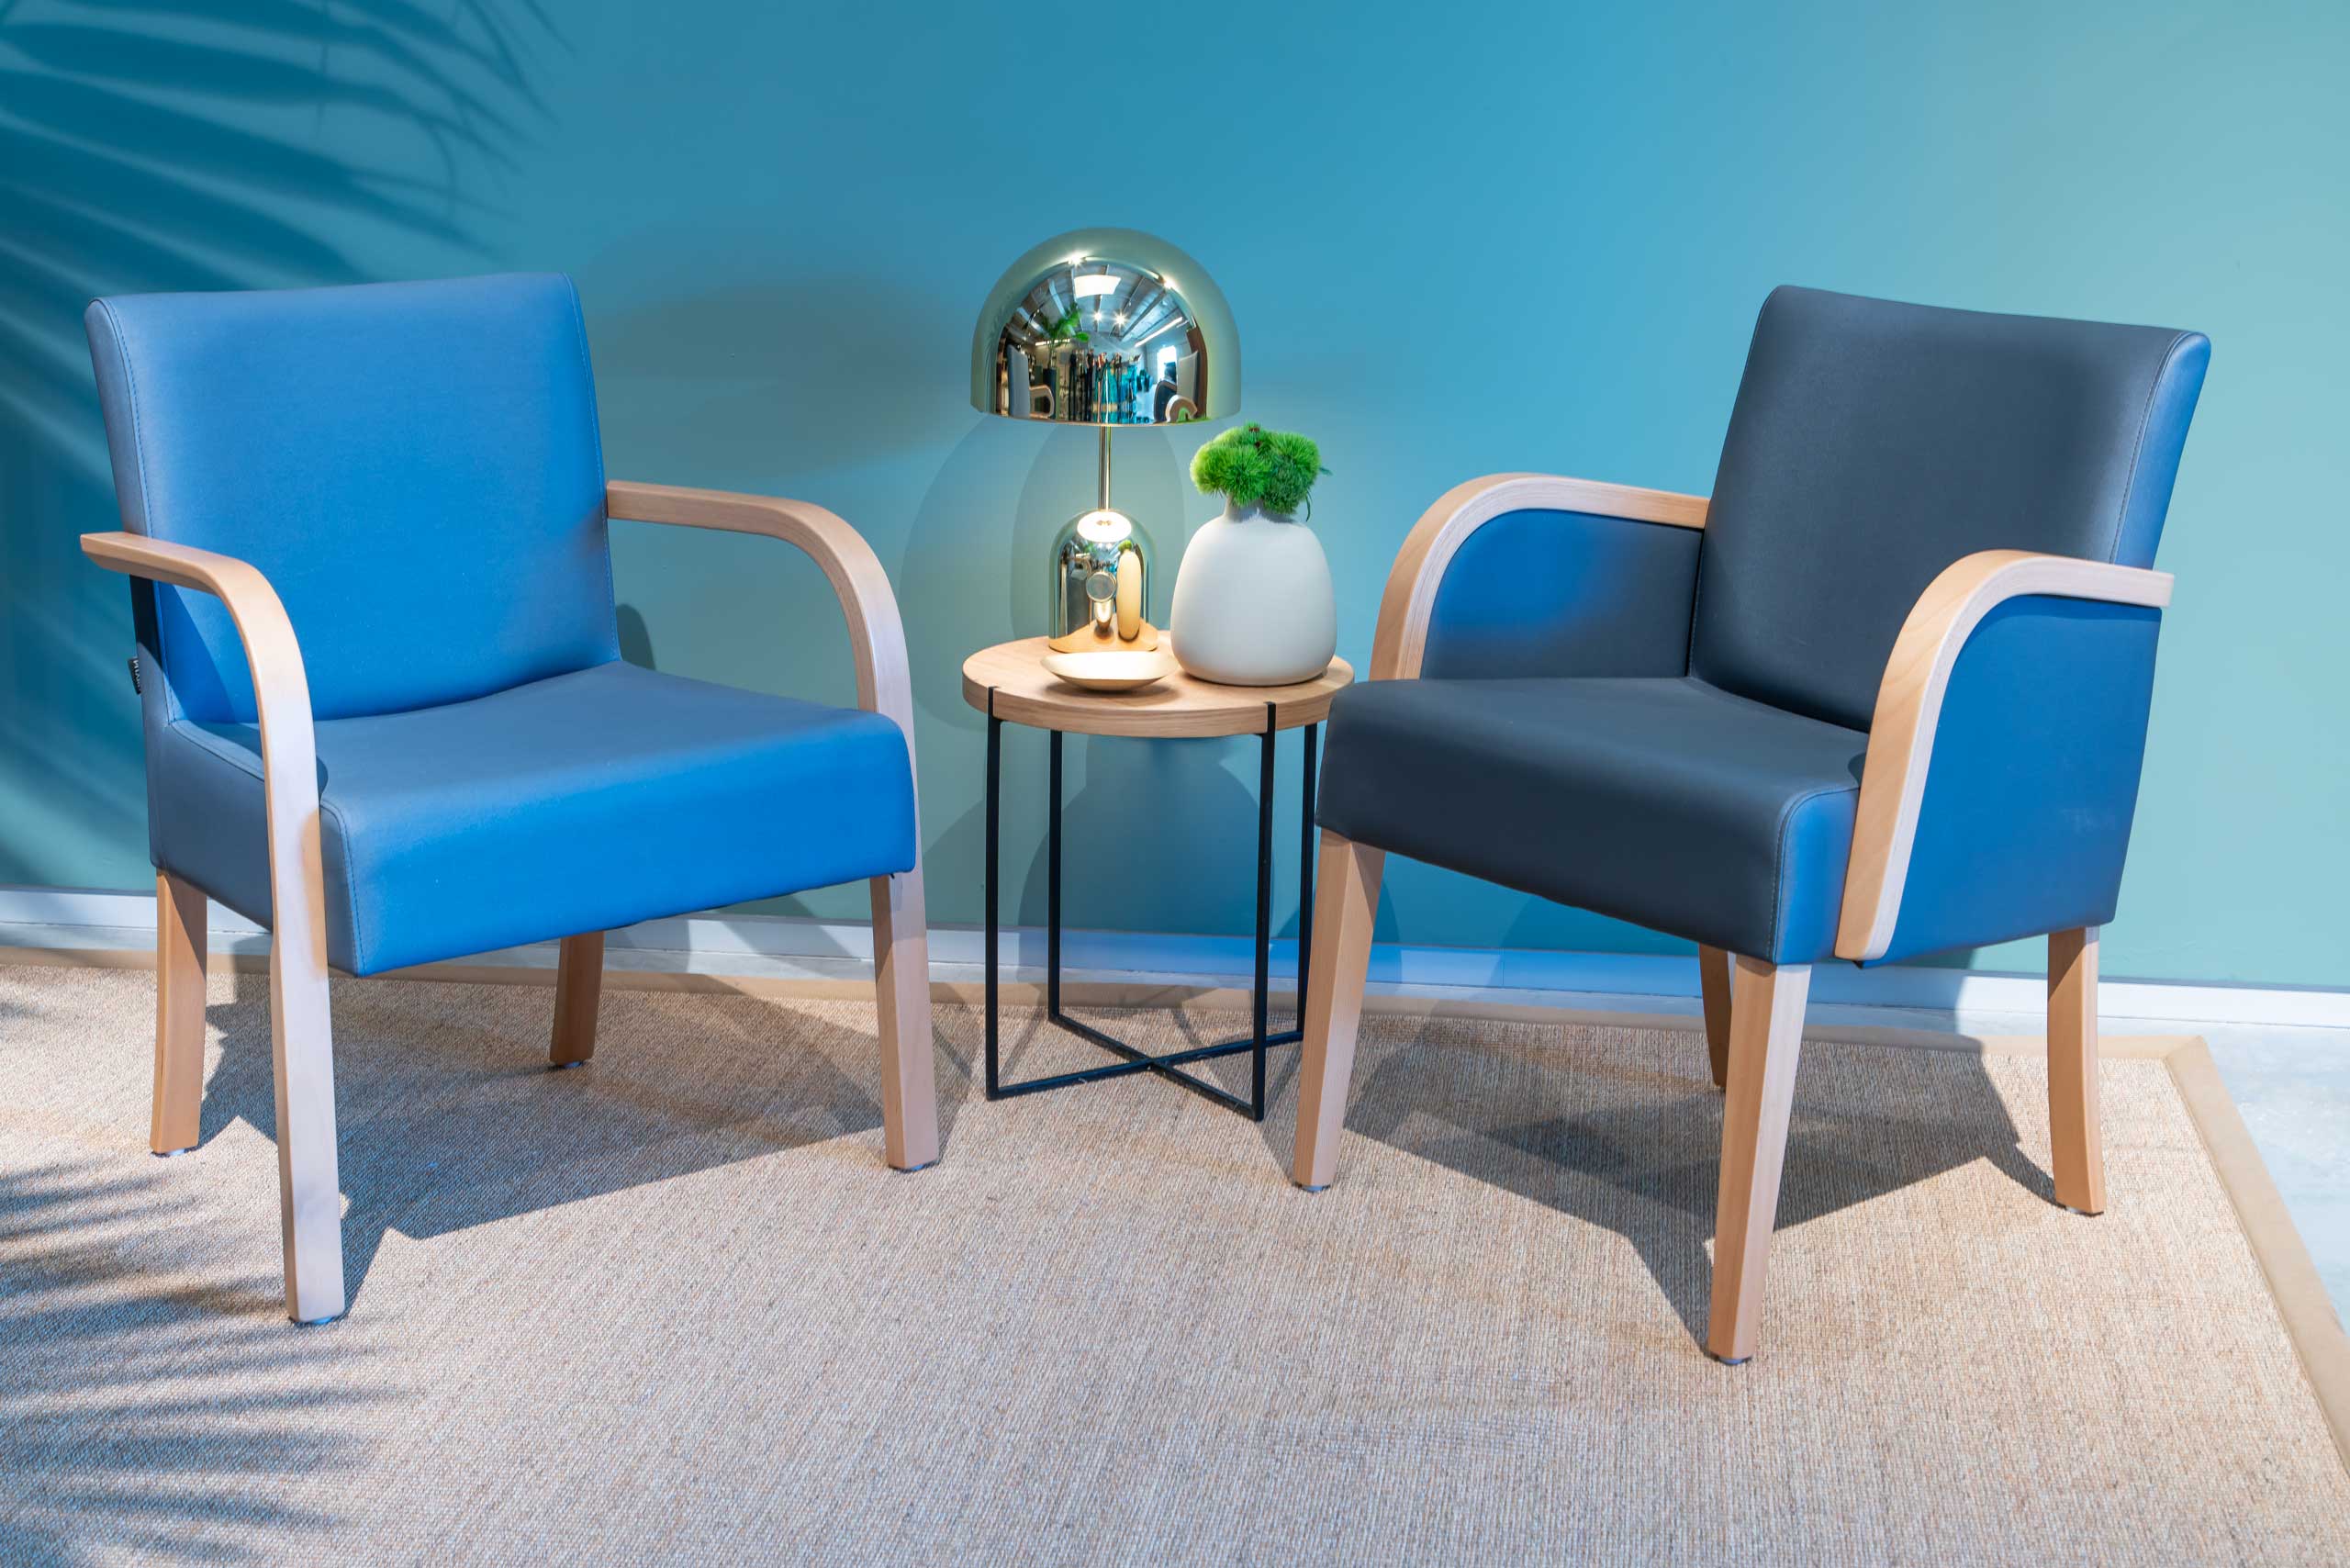 חדר תצוגה של רהיטי פיטרו לשוק המוסדי חדר המתנה כורסאות כחולות שולחן מנורה כסופה זהובה